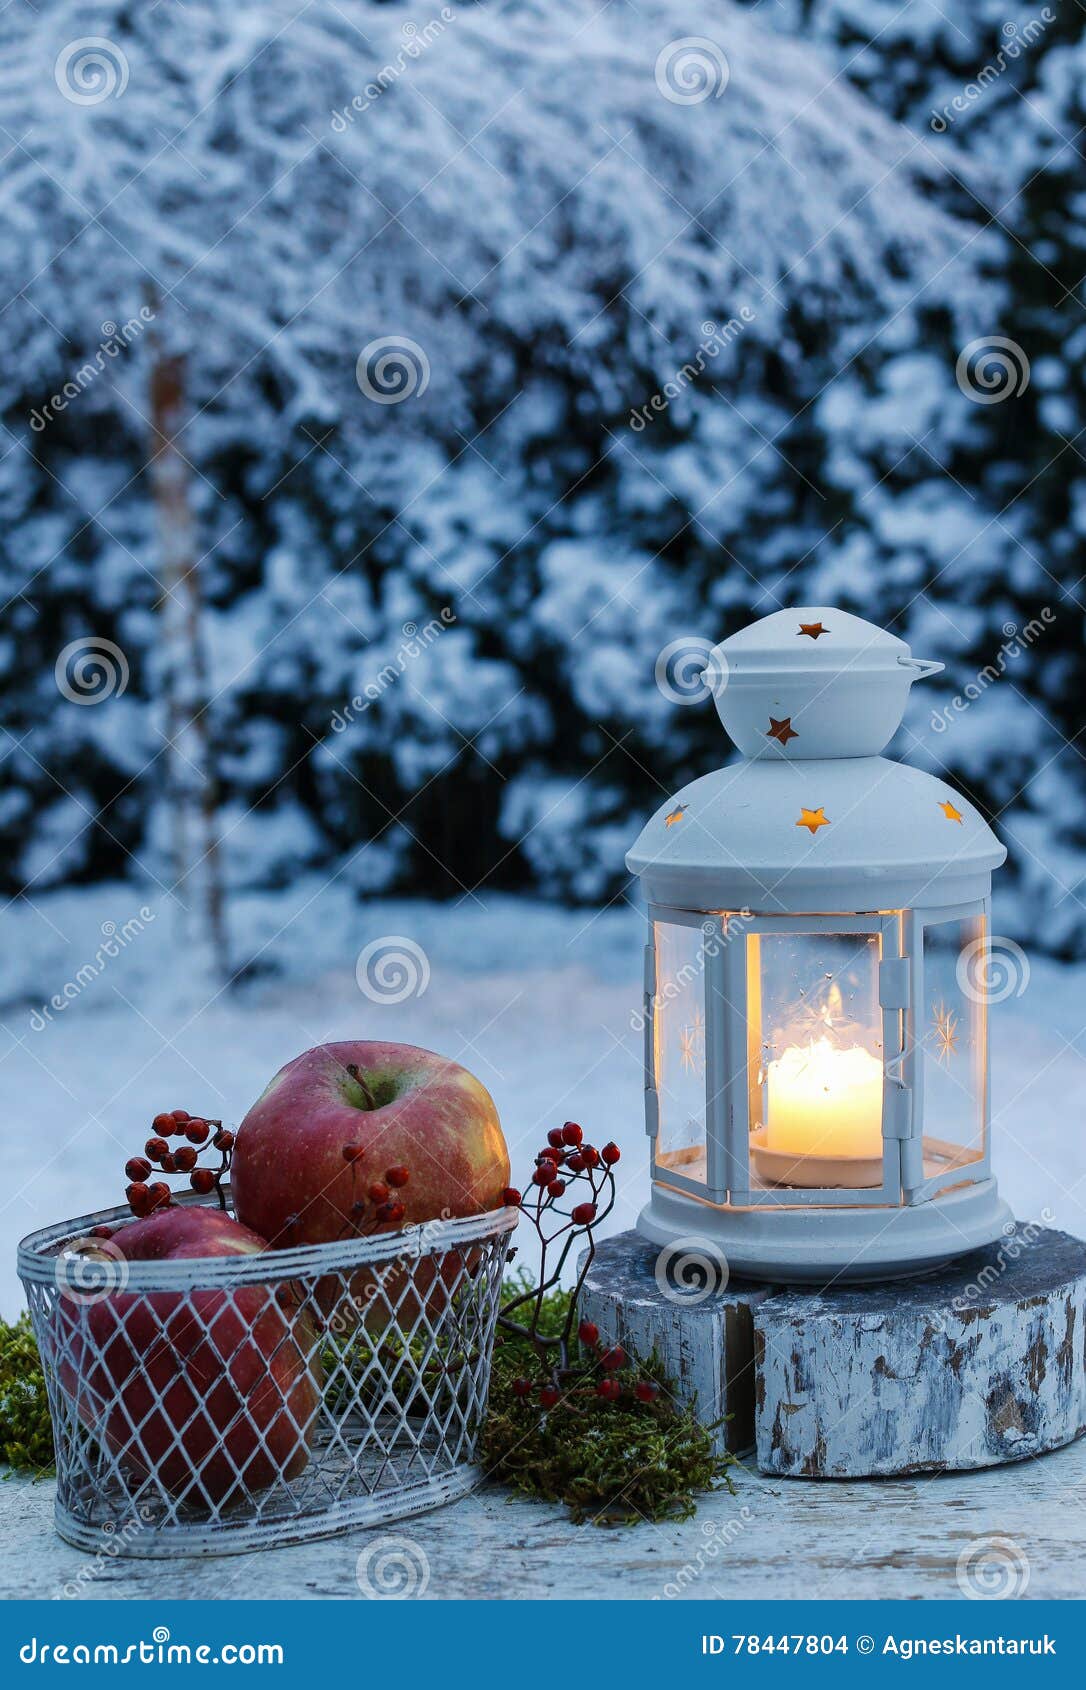 Winterabend Im Garten Eisenlaterne Und Korb Von Apfeln Stockfoto Bild Von Garten Apfeln